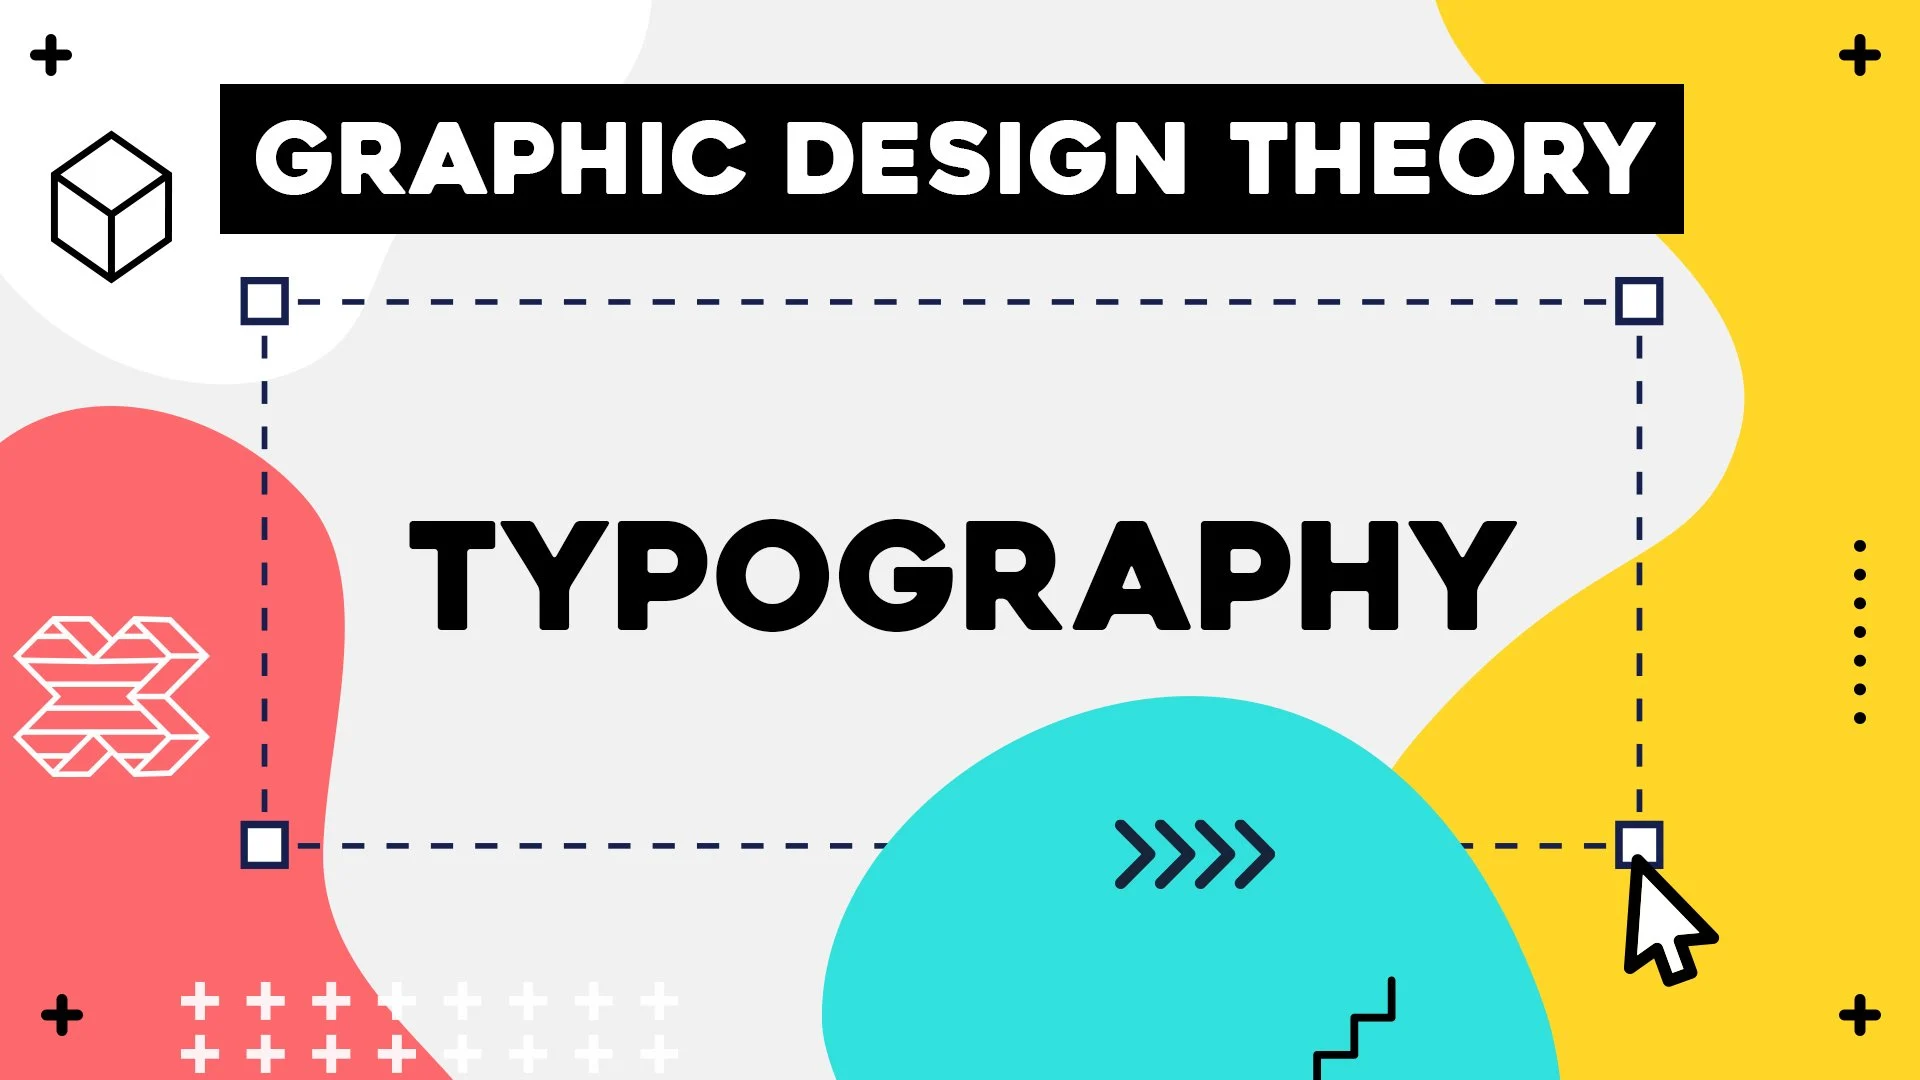 آموزش تئوری طراحی گرافیک - تایپوگرافی